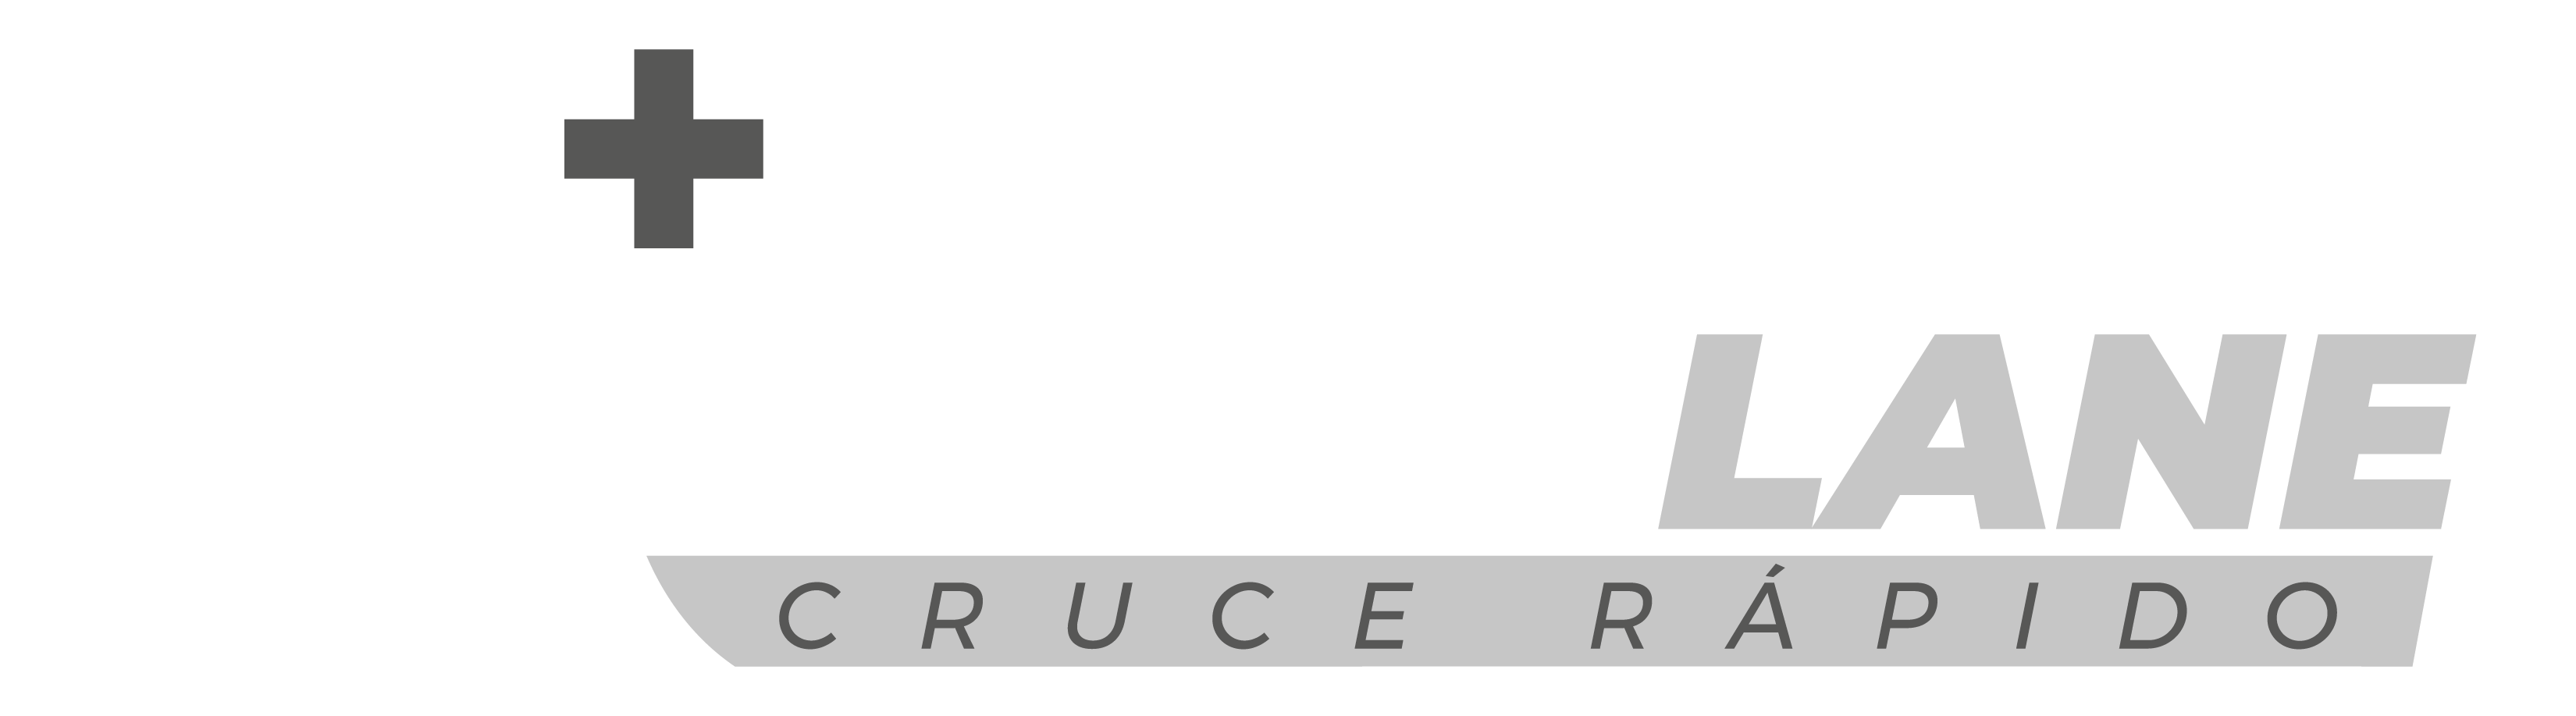 logo medlane